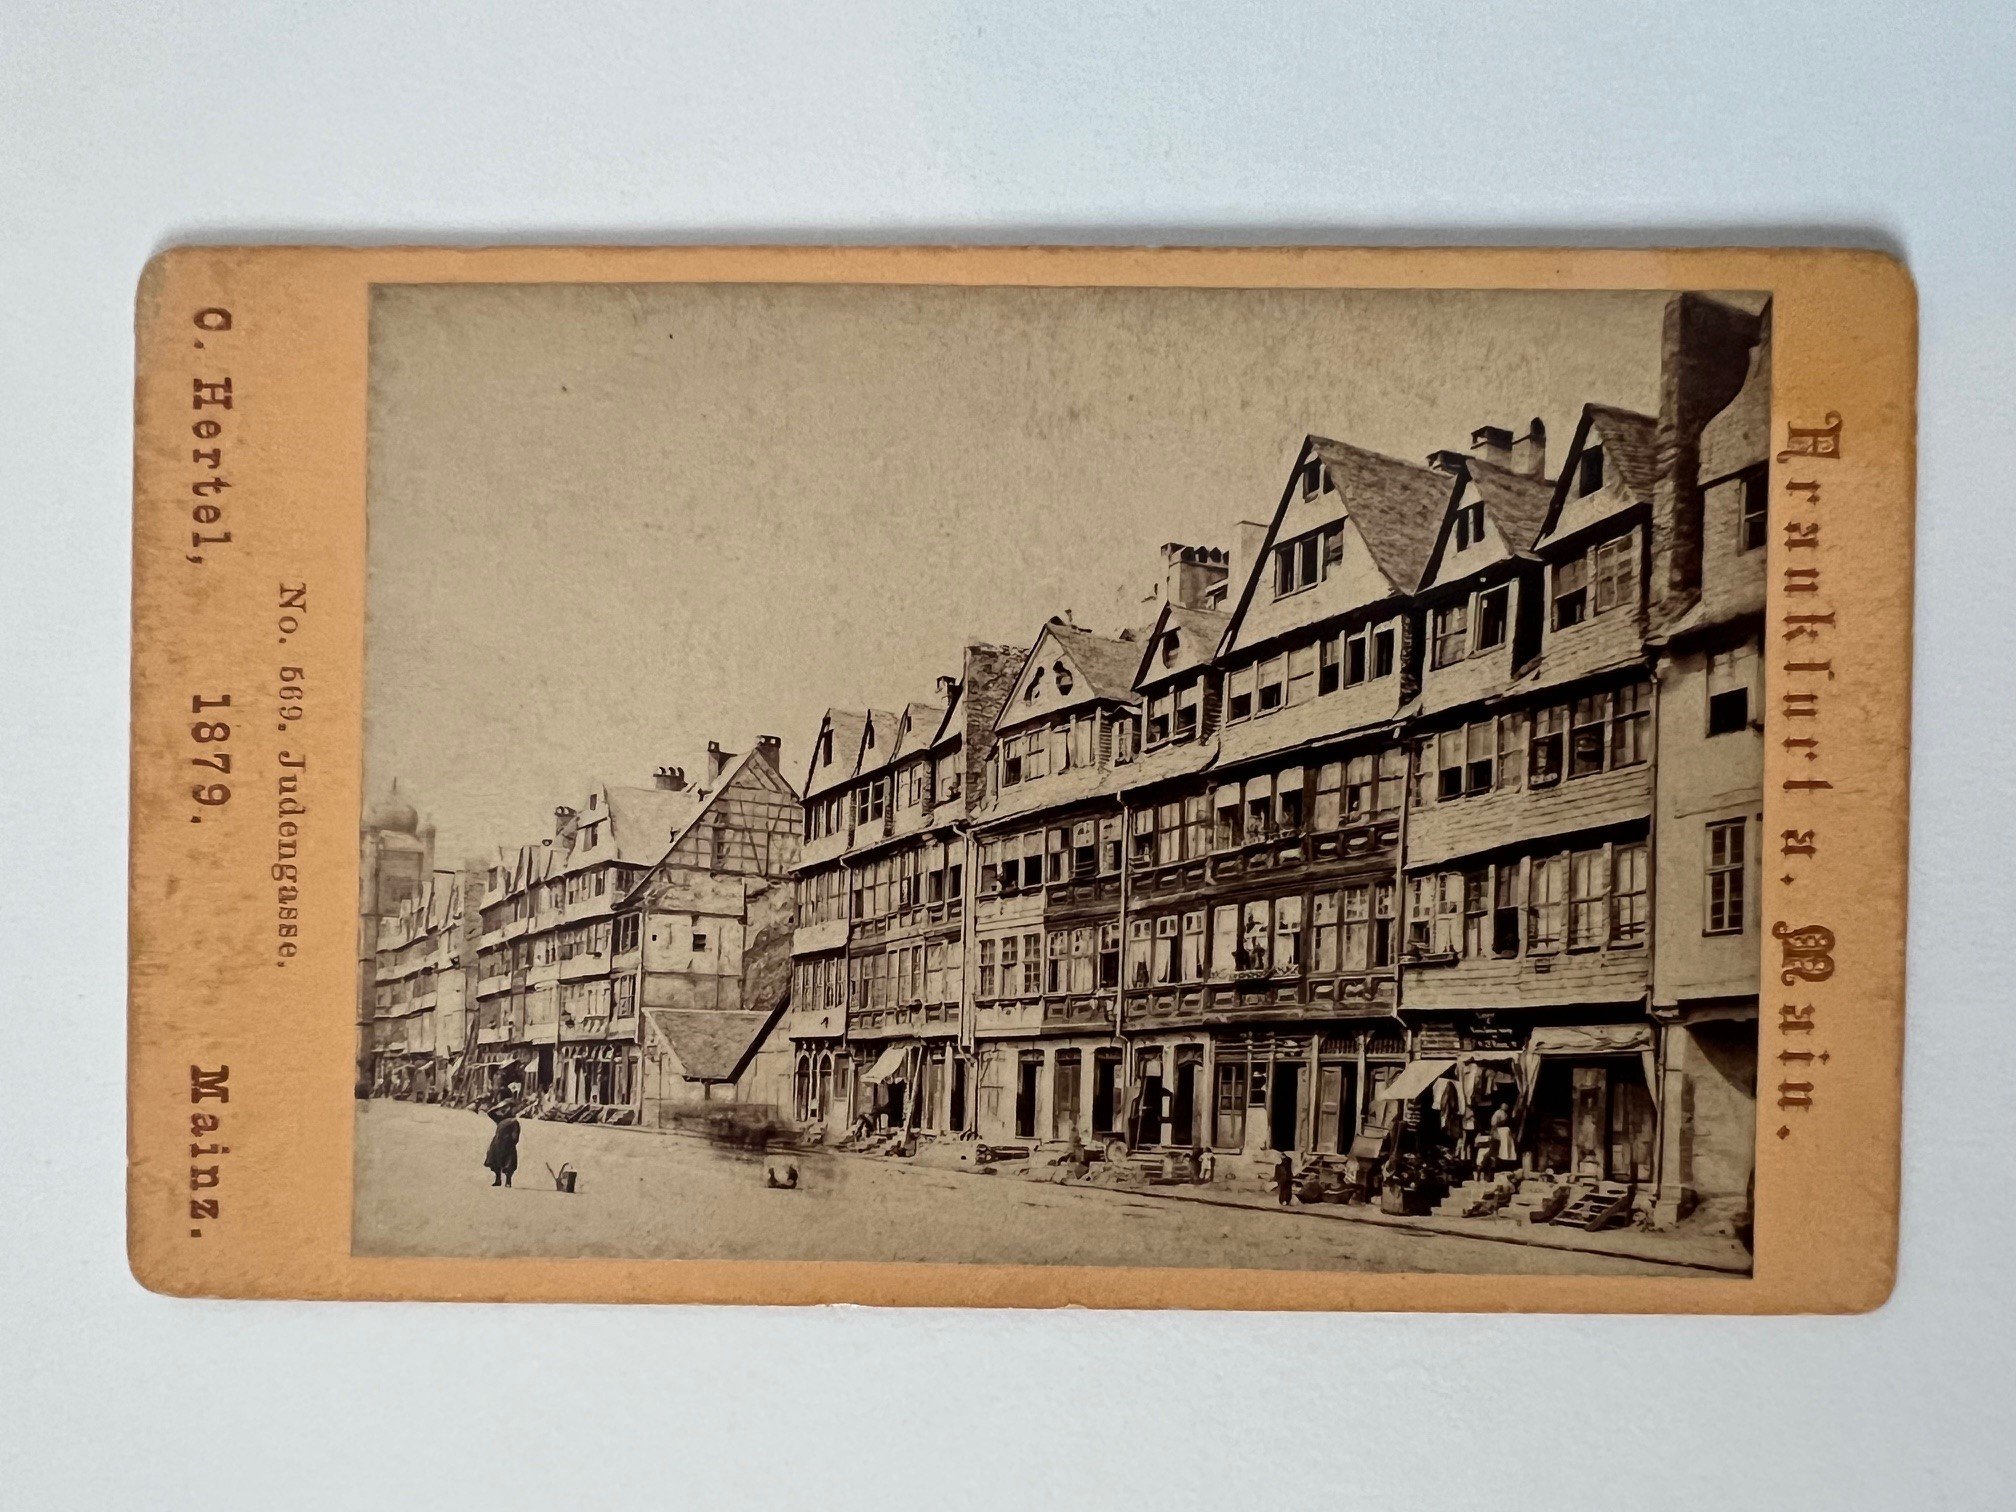 CdV, Carl Hertel, Frankfurt, Judengasse, 1879. (Taunus-Rhein-Main - Regionalgeschichtliche Sammlung Dr. Stefan Naas CC BY-NC-SA)